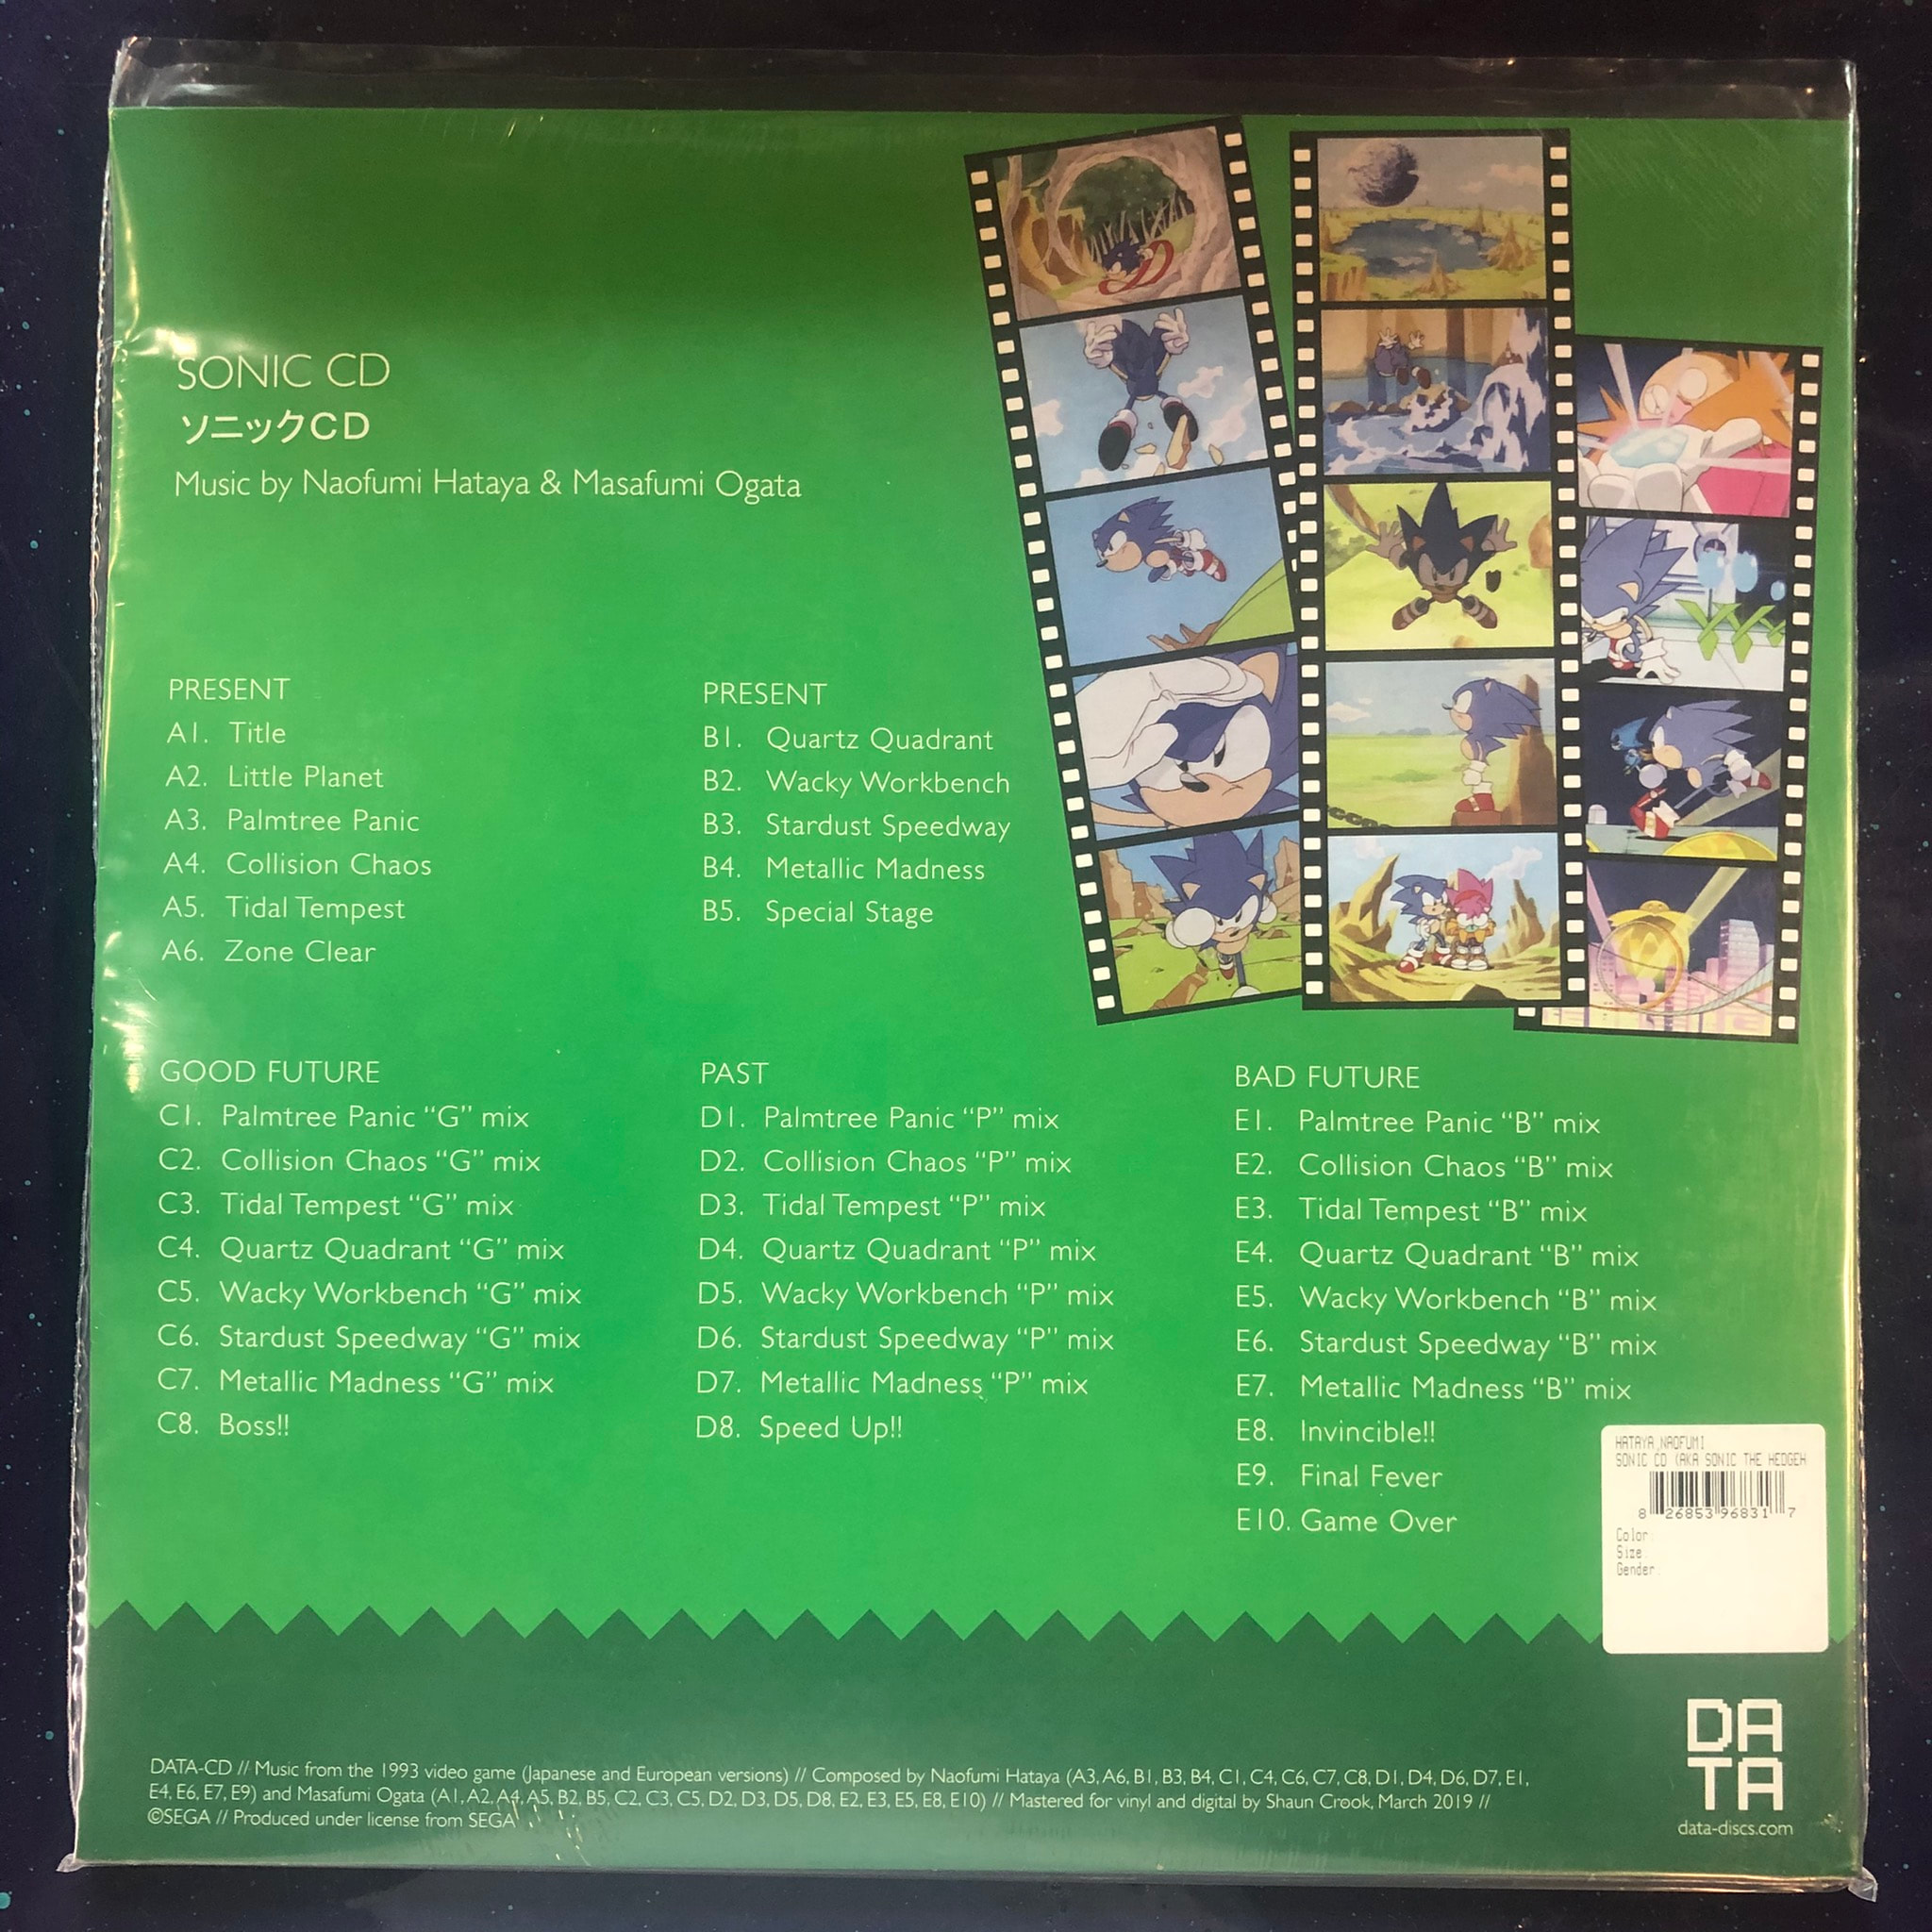 SonicCD Vinyl UK back.jpg